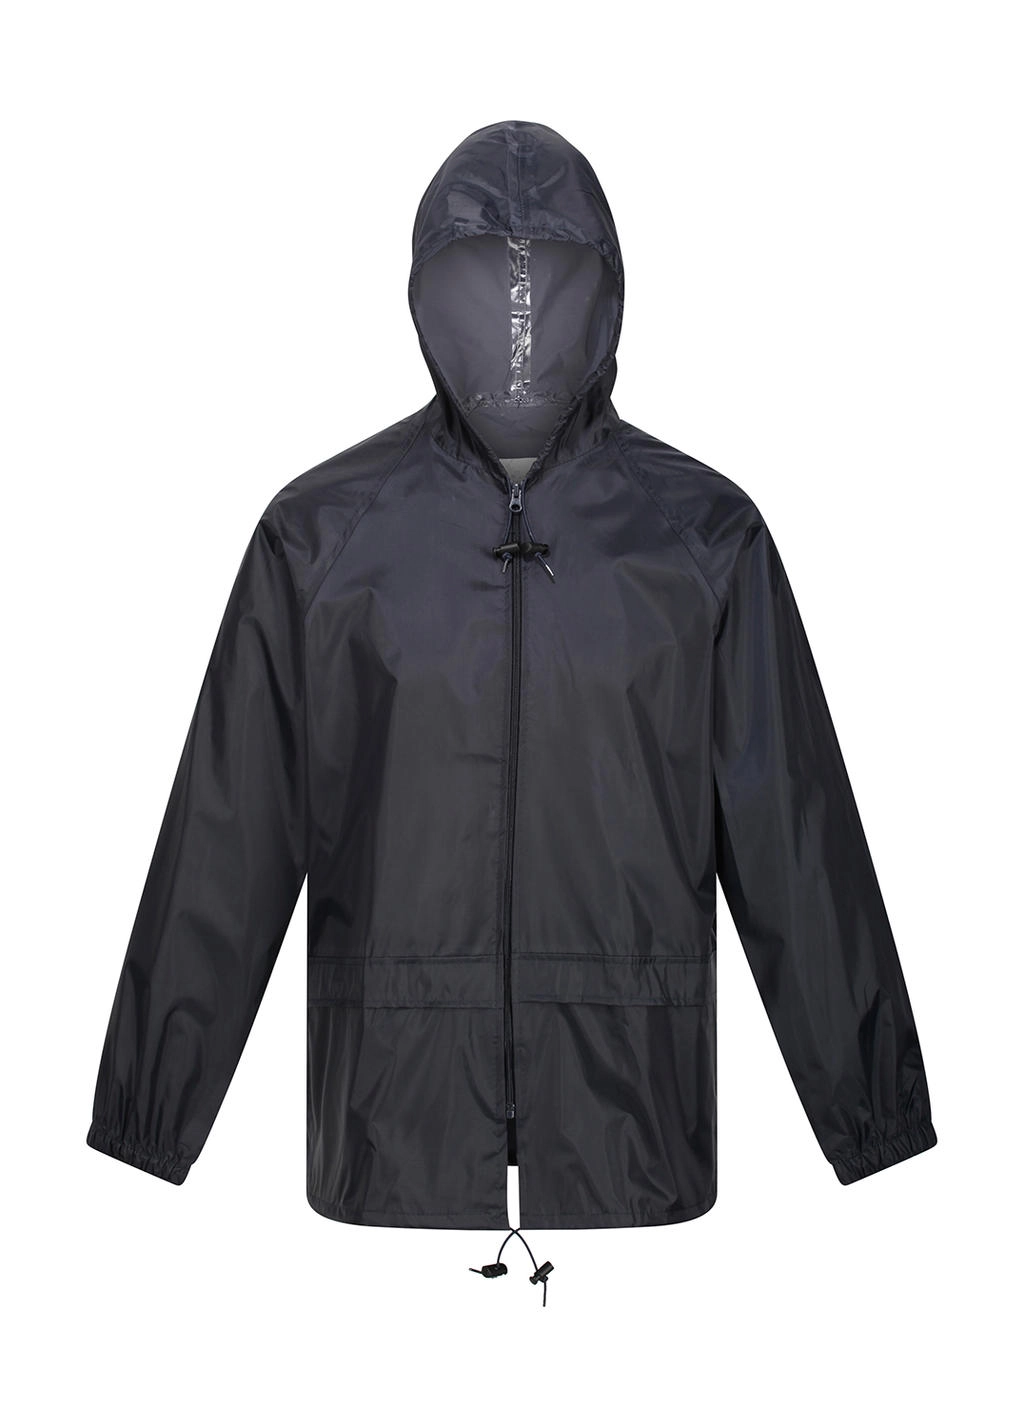 Stormbreak Jacket zum Besticken und Bedrucken in der Farbe Navy mit Ihren Logo, Schriftzug oder Motiv.